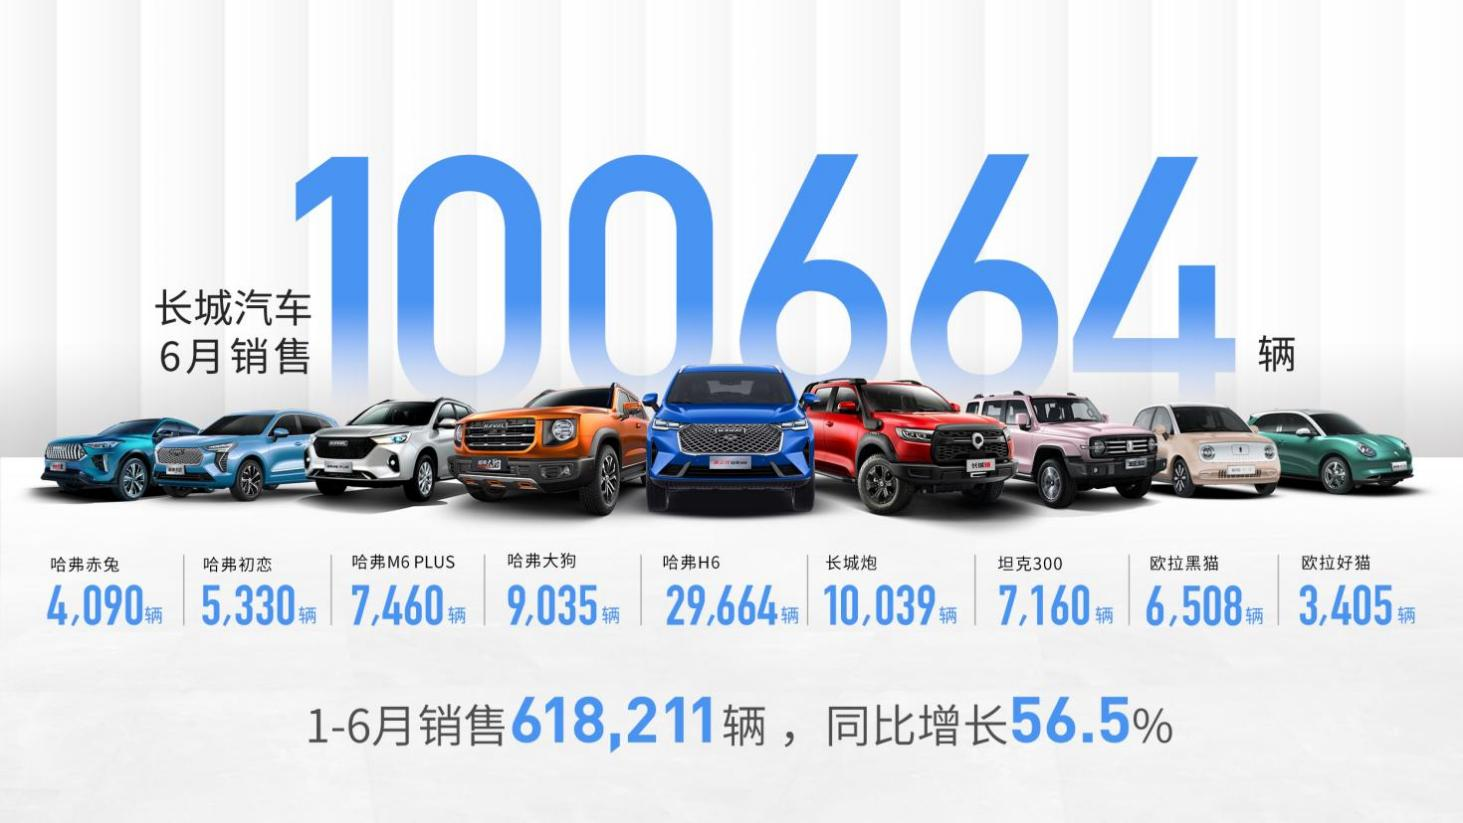 出行头条|长城汽车6月销售100,664辆 捷途品牌宣布正式独立